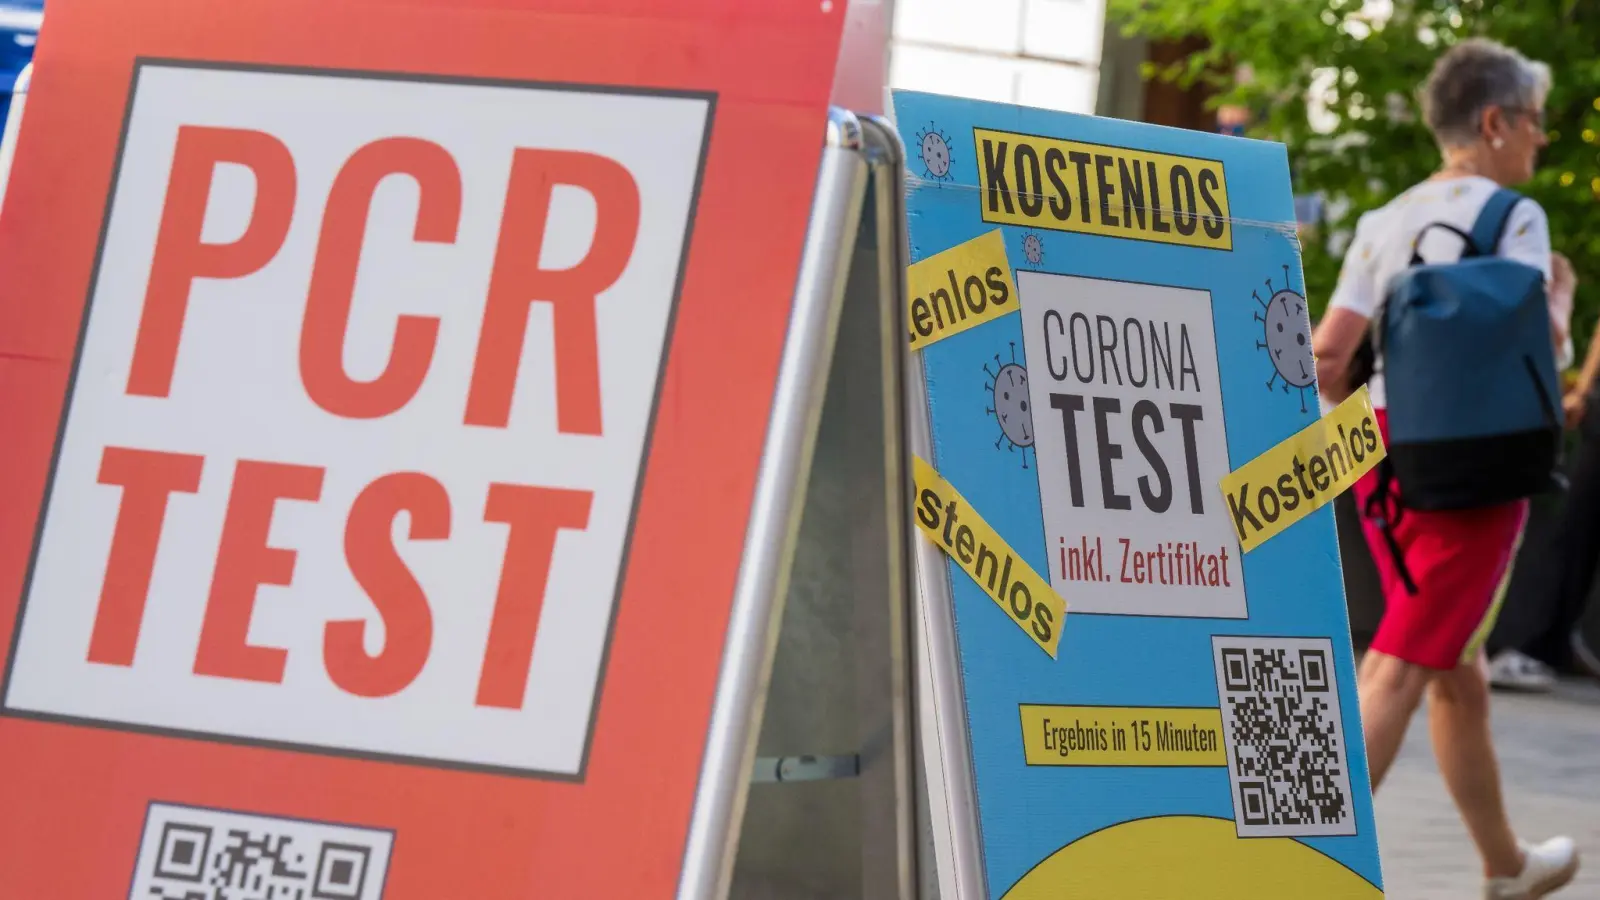 Schilder bewerben vor dem Eingang einer Apotheke in der Münchener Innenstadt Corona-Tests. (Foto: Peter Kneffel/dpa)